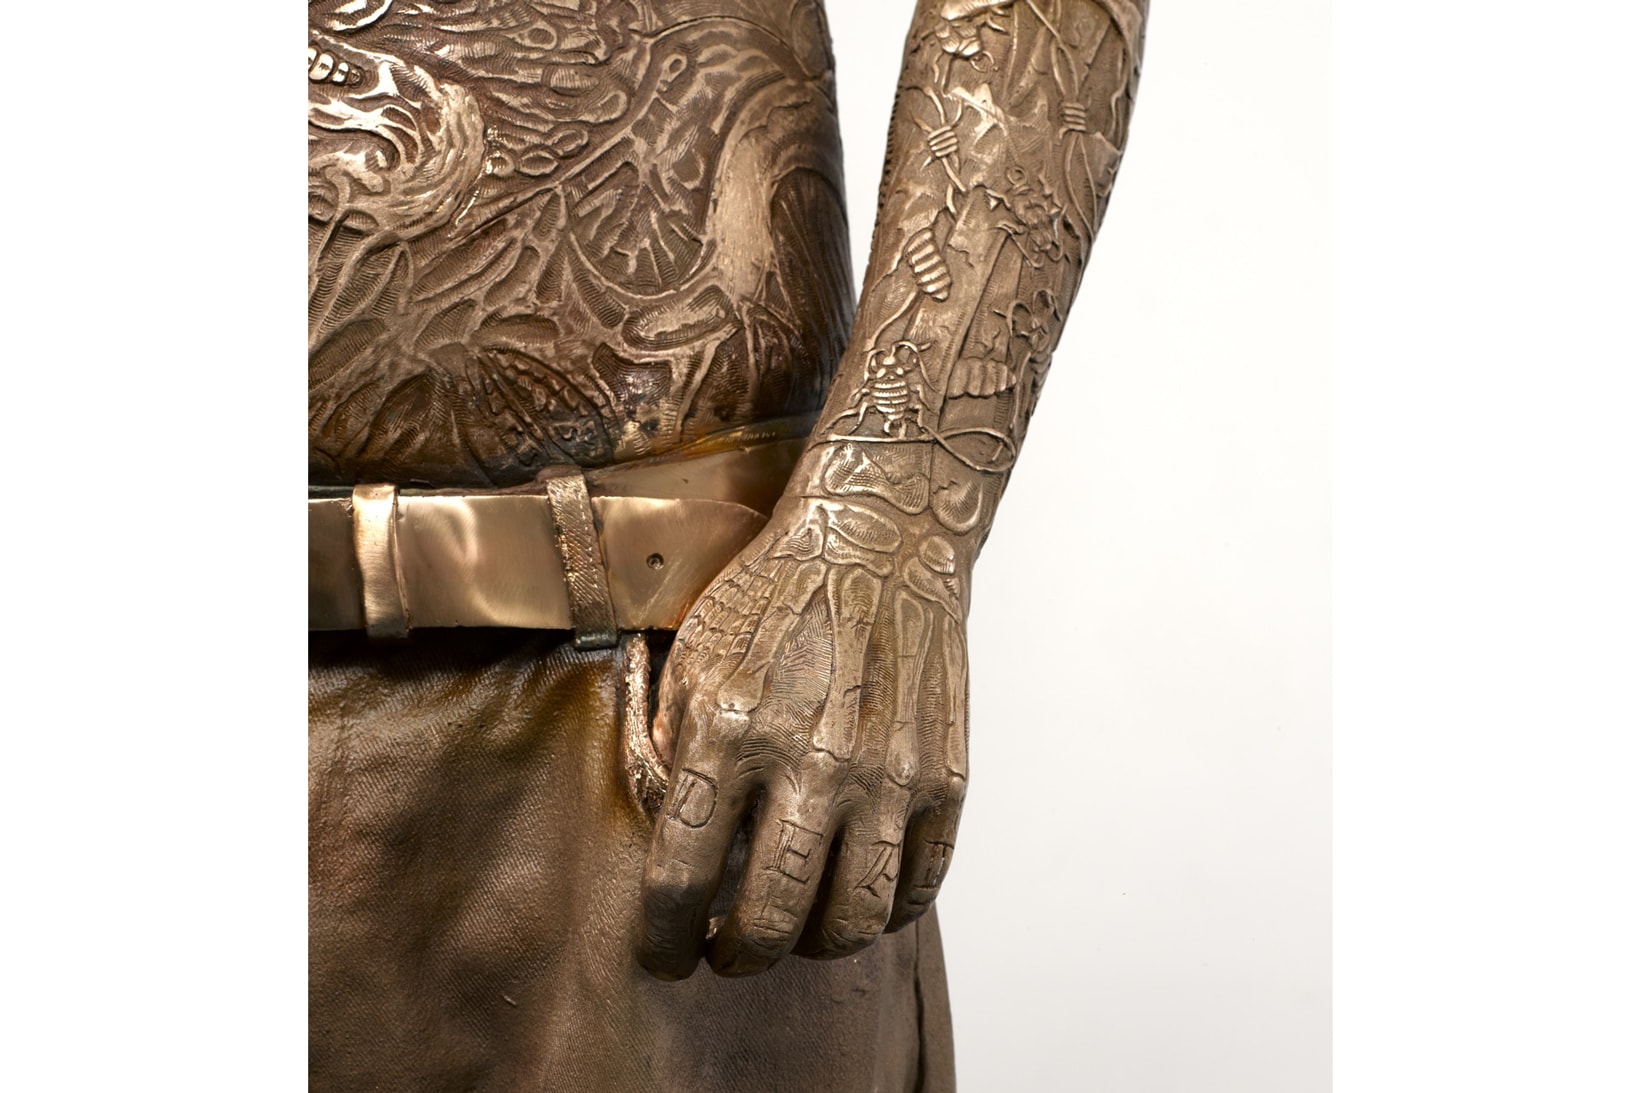 Marc Quinn 打造的 Rick Genest 雕像將於倫敦科學博物館展出